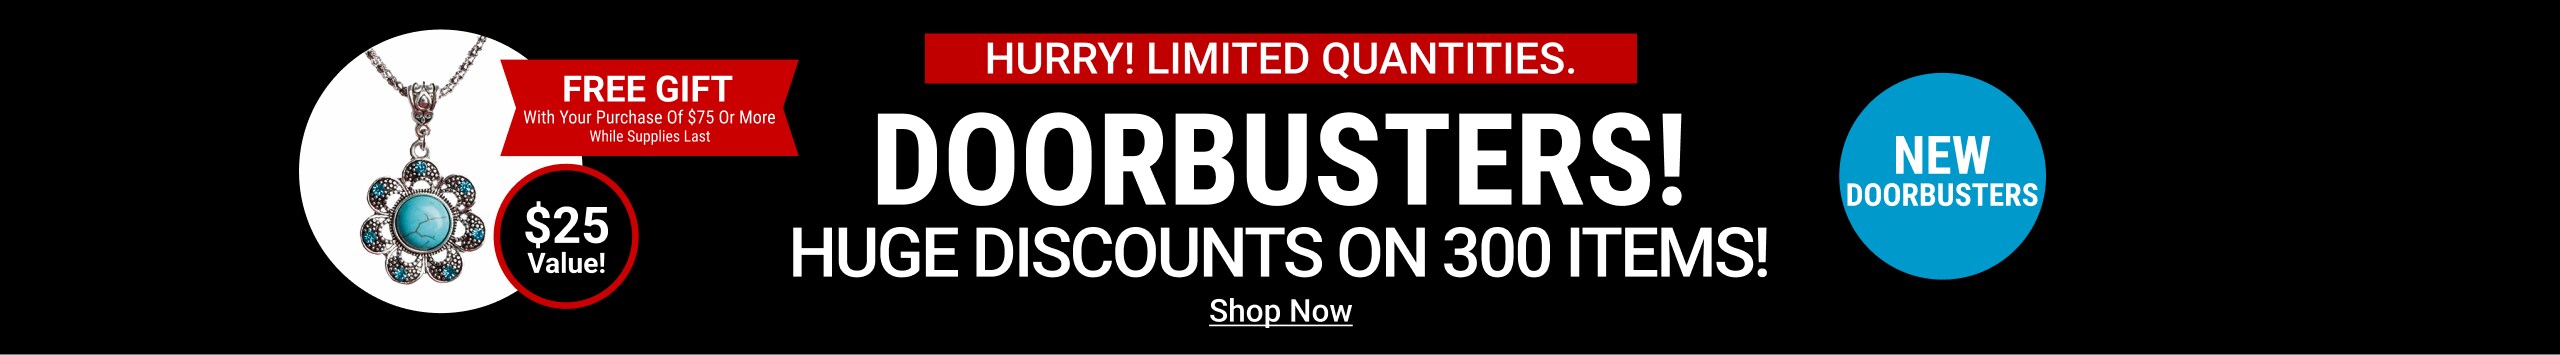 Huge discounts on our doorbusters - Shop Now